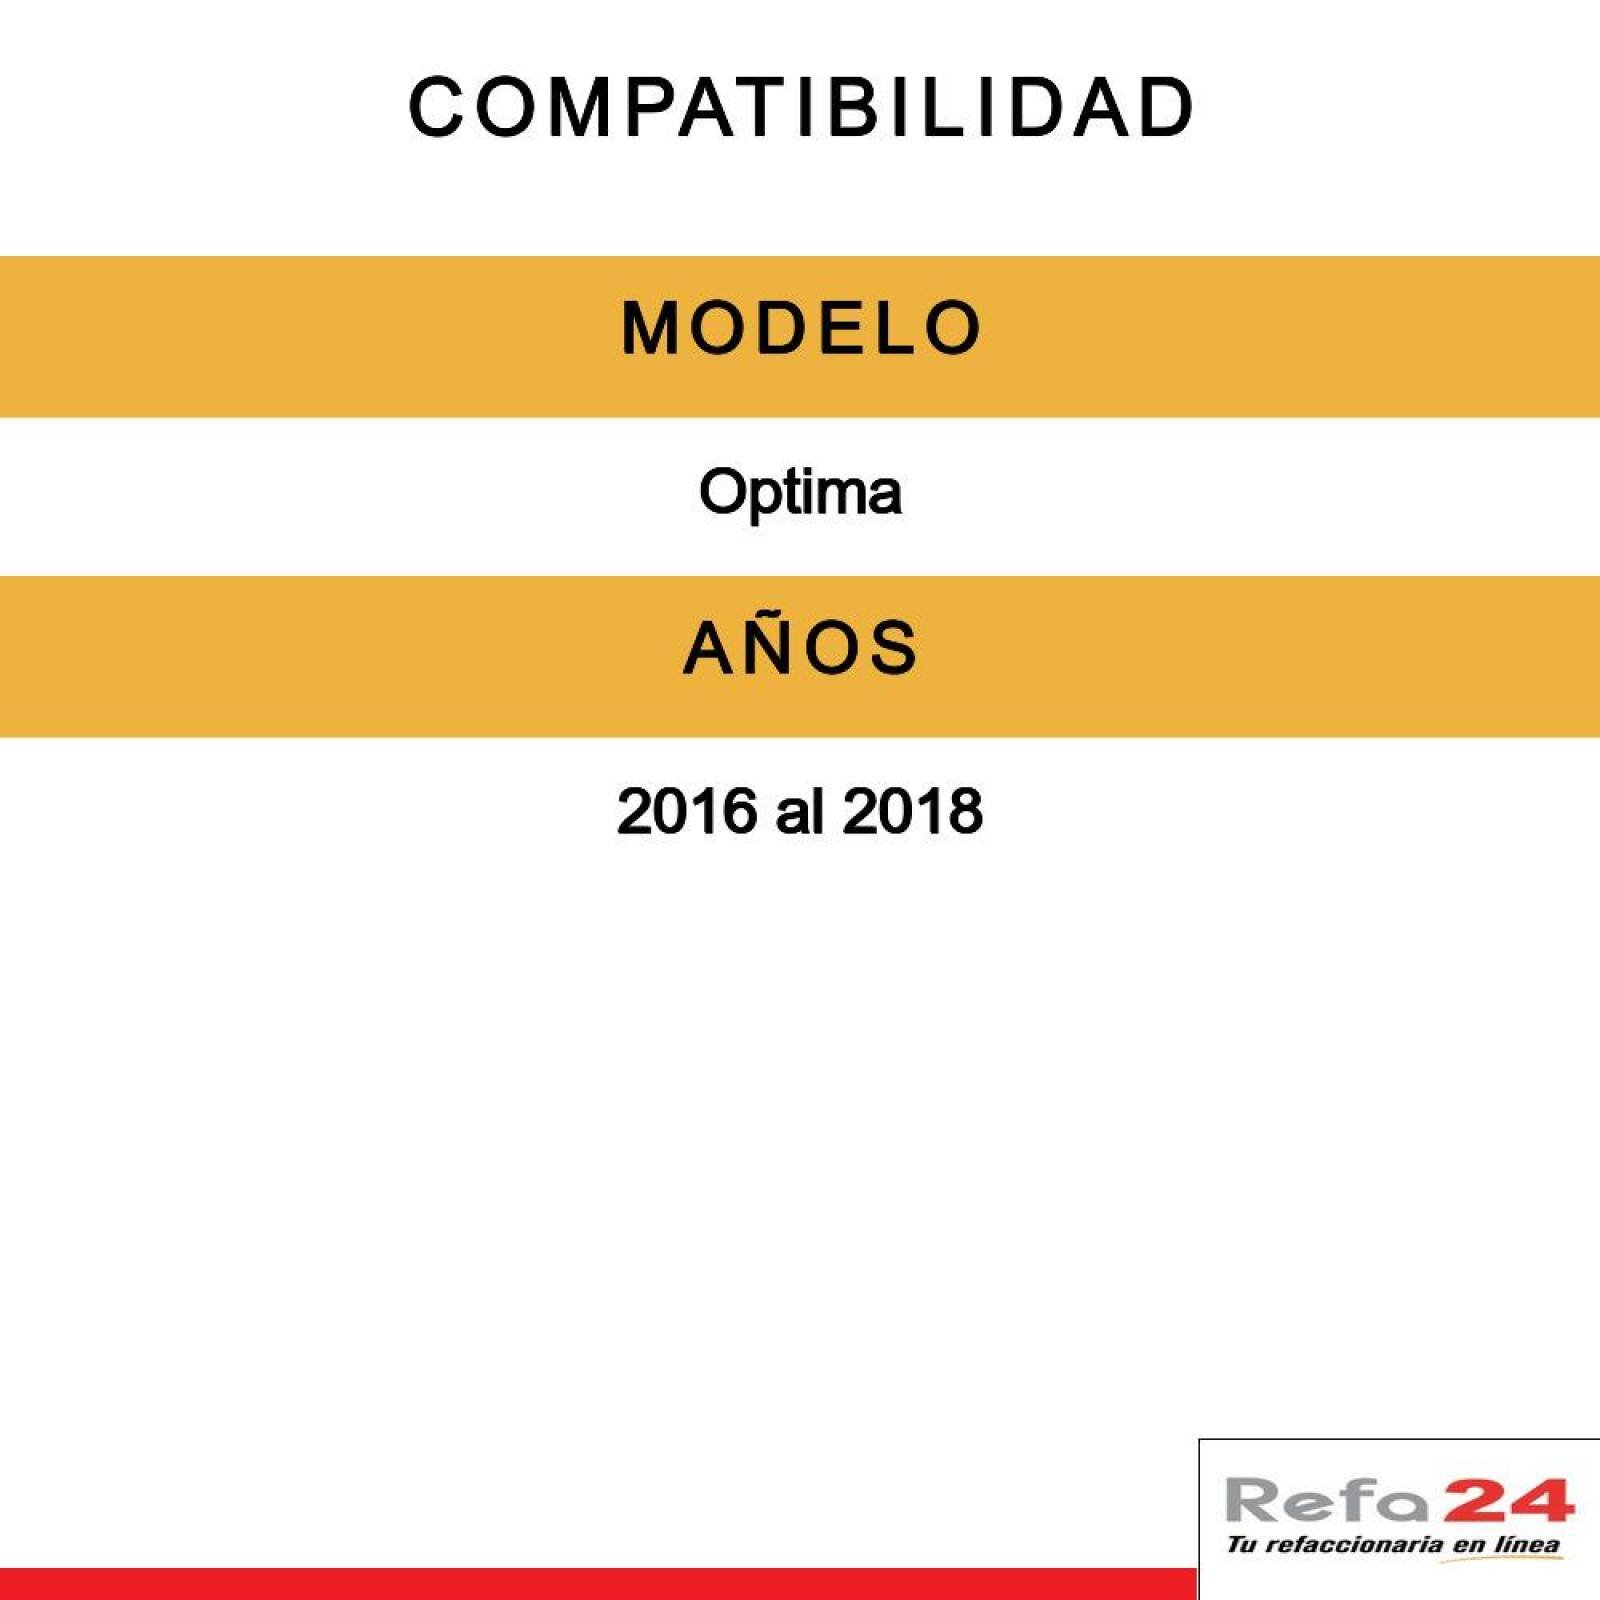 Par De Calaveras - Compatible Con Kia Optima 2016-2018 - Lado Der/Izq 